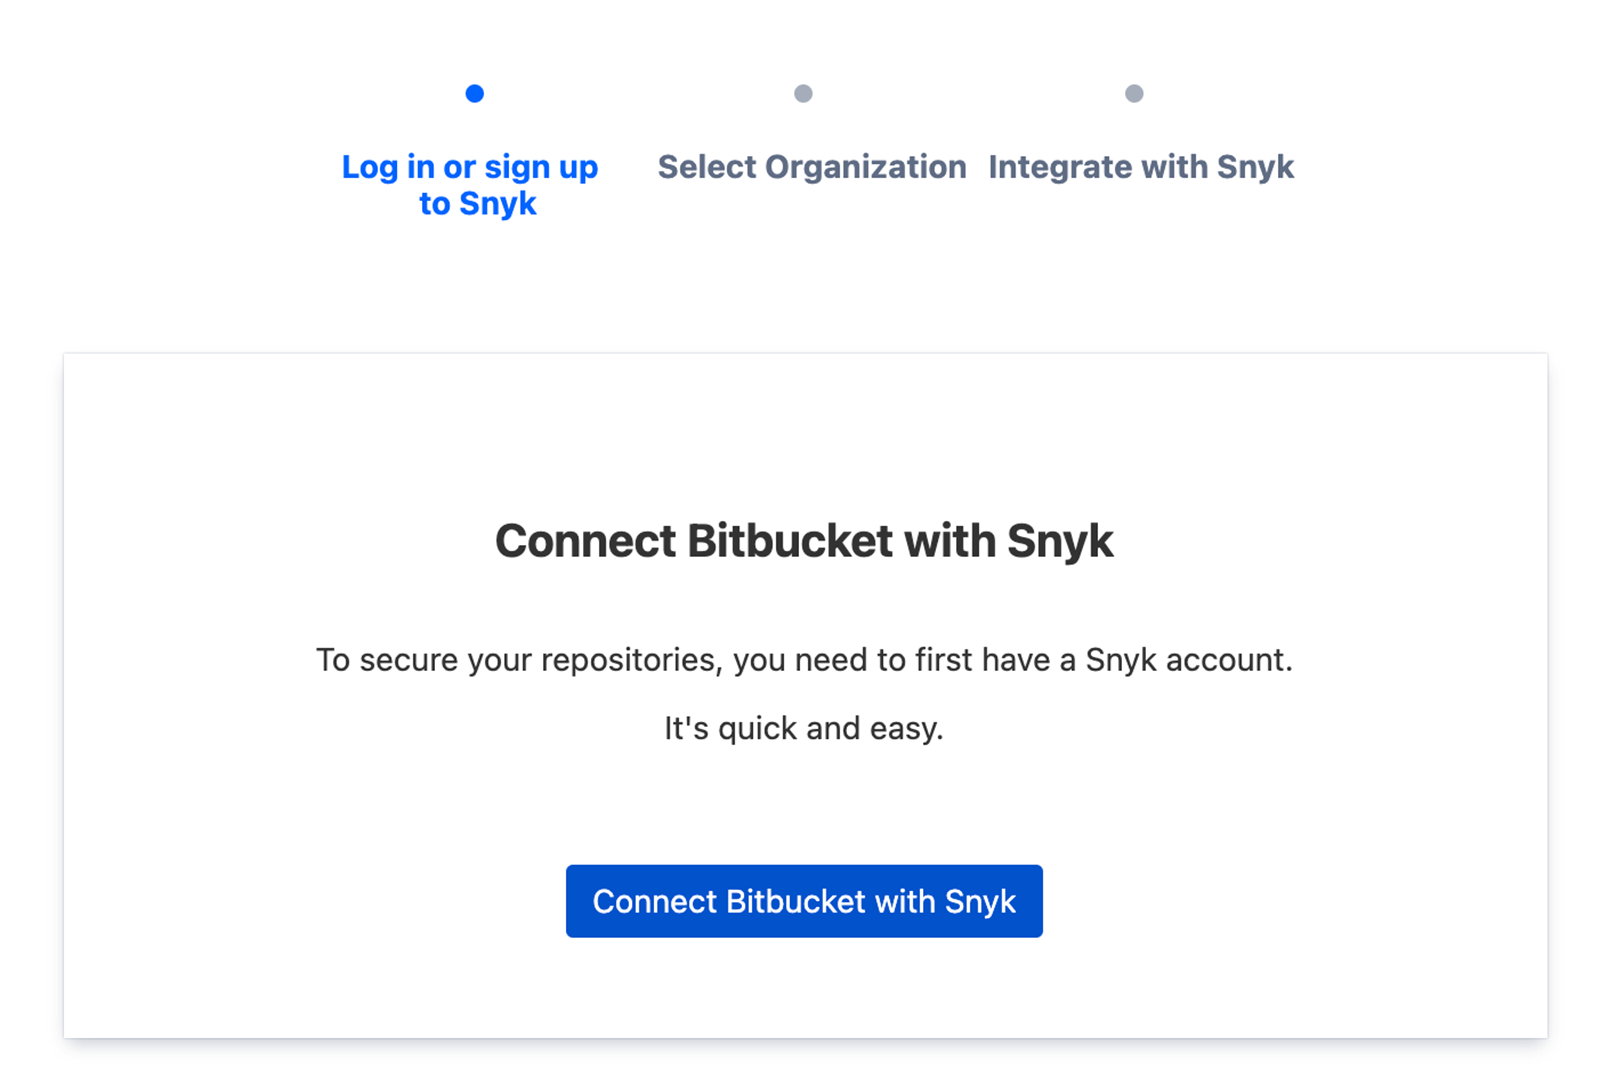 Connect Bitbucket to Snyk